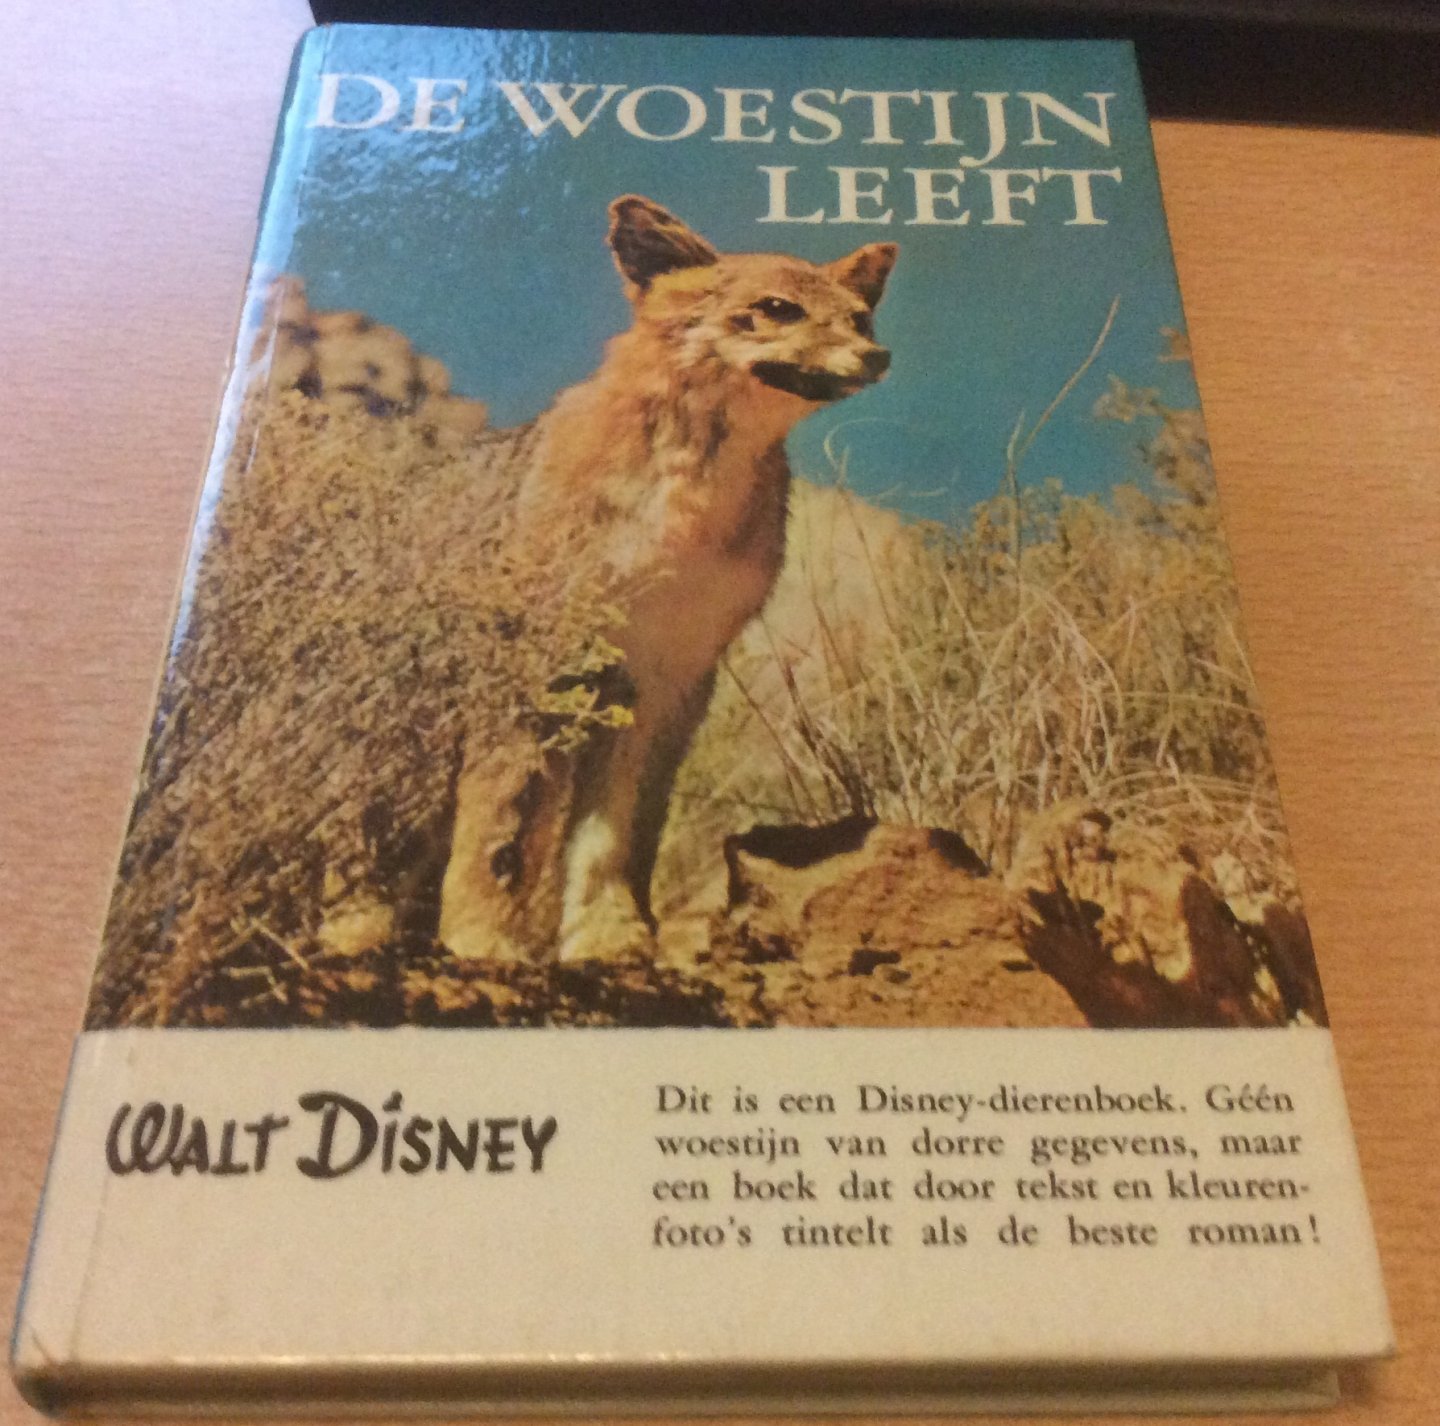 Snoeren, Piet - De Woestijn leeft Walt Disney